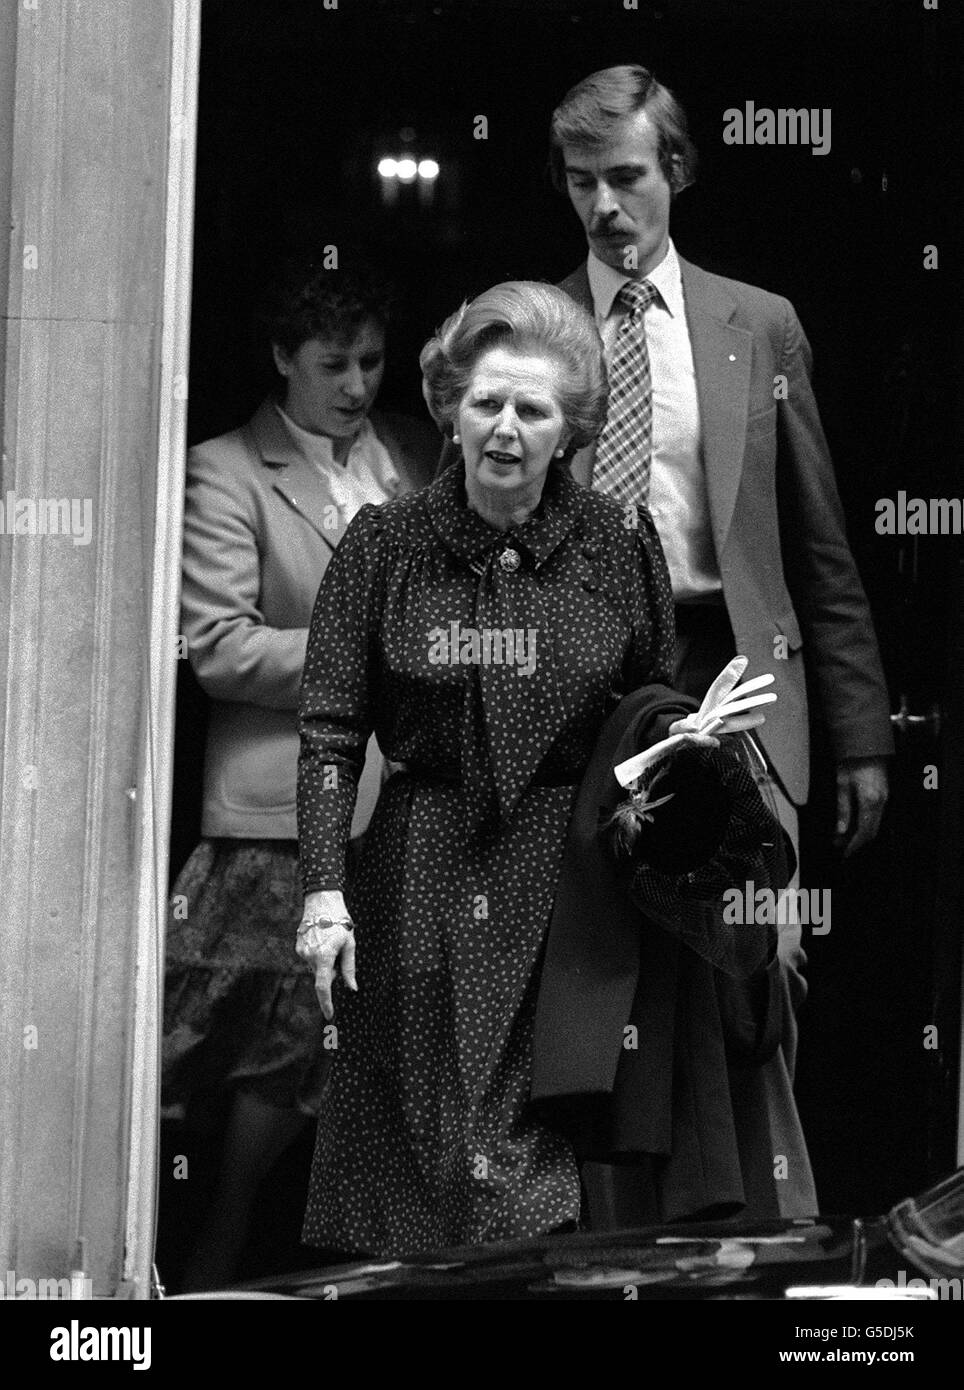 La première ministre Margaret Thatcher quitte le no 10 Downing Street, à Londres, avec son chapeau dans la main.Elle a fait une pause pour visiter sa circonscription de Finchley, dans le nord de Londres. Banque D'Images